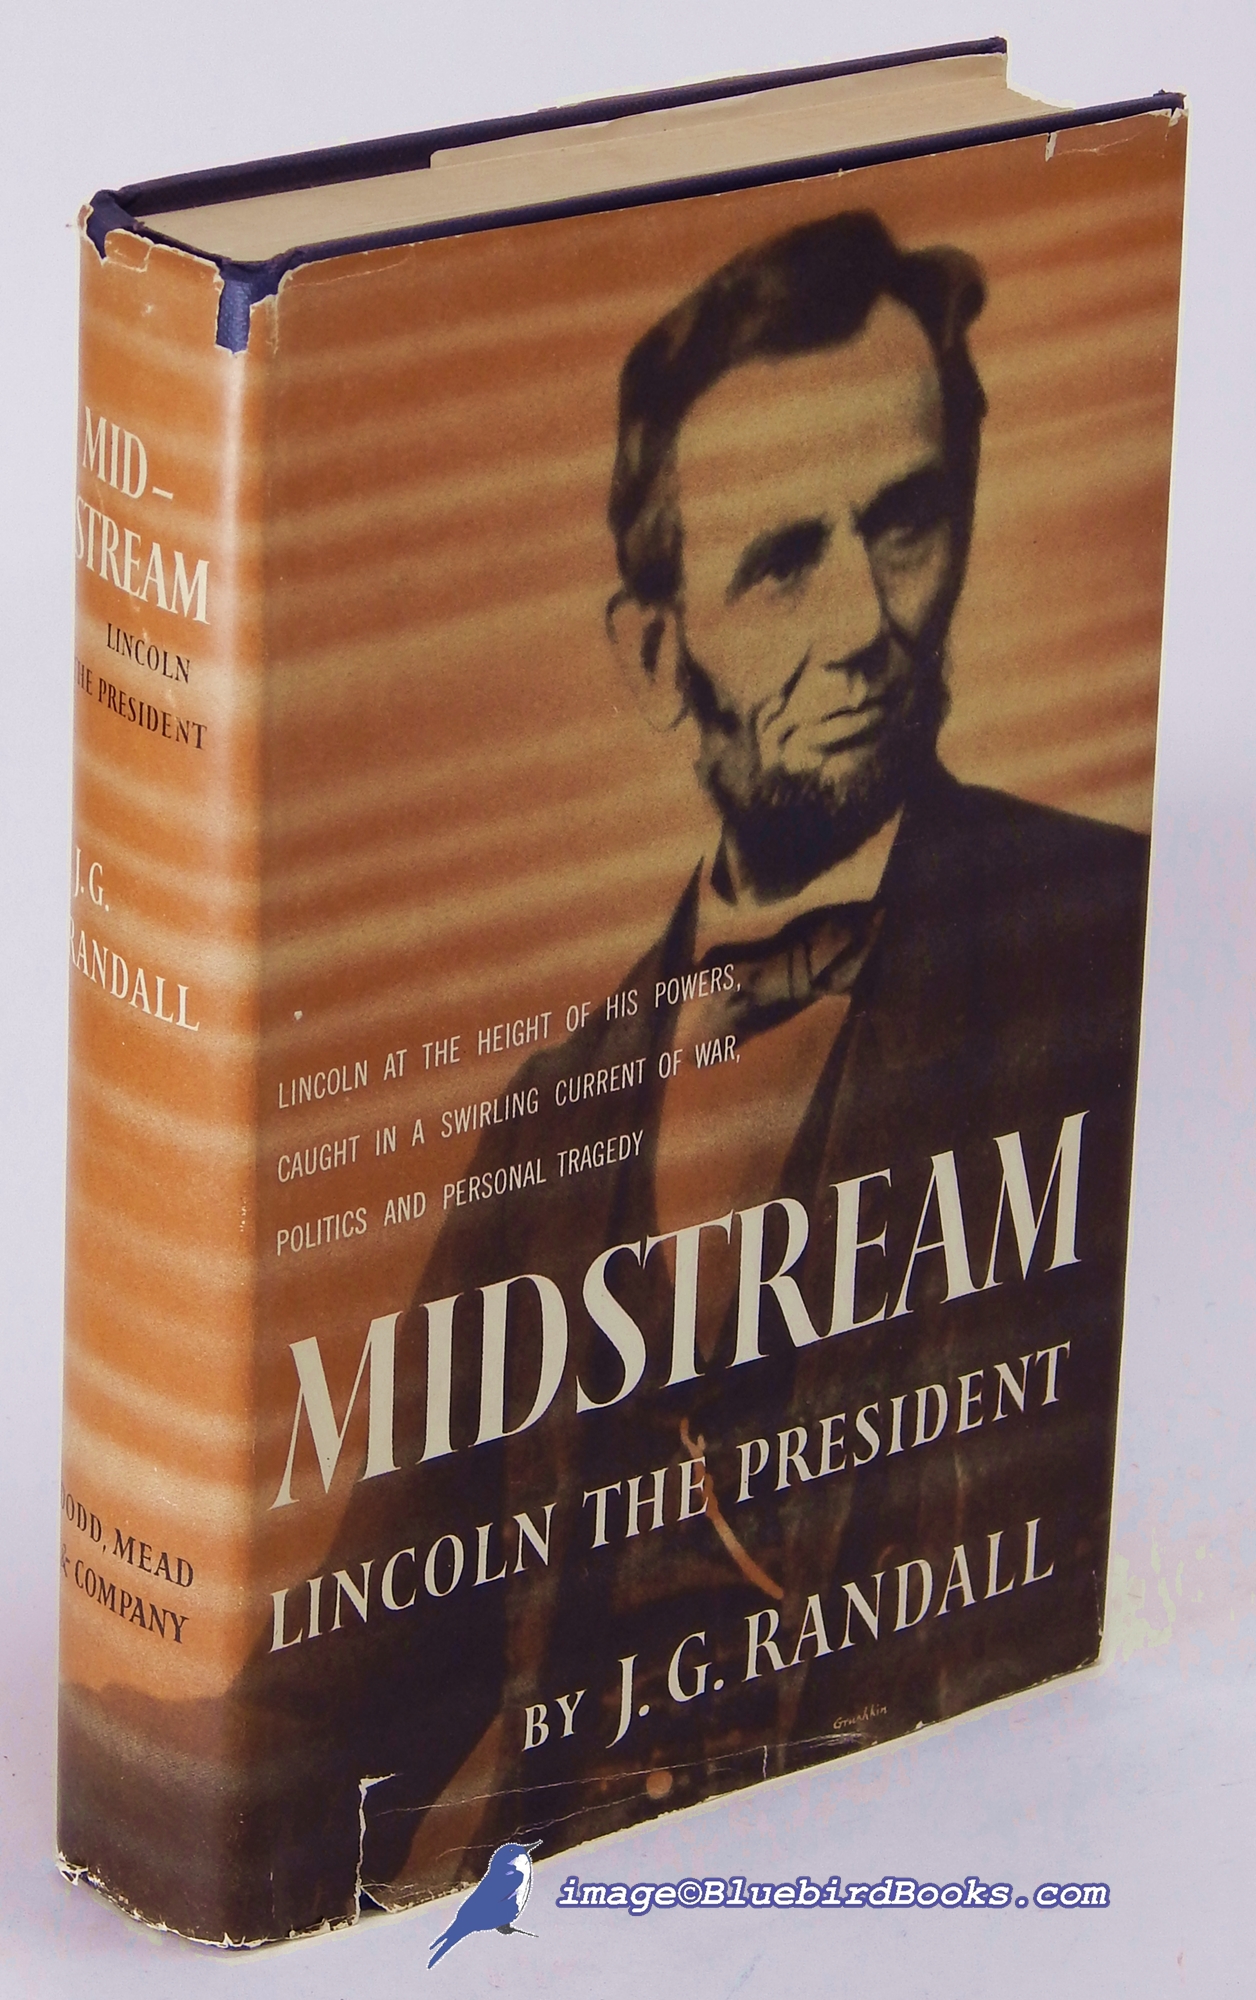 RANDALL, J. G. - Midstream: Lincoln the President (Volume 3 Only of 4-Volume Lincoln the President Series)